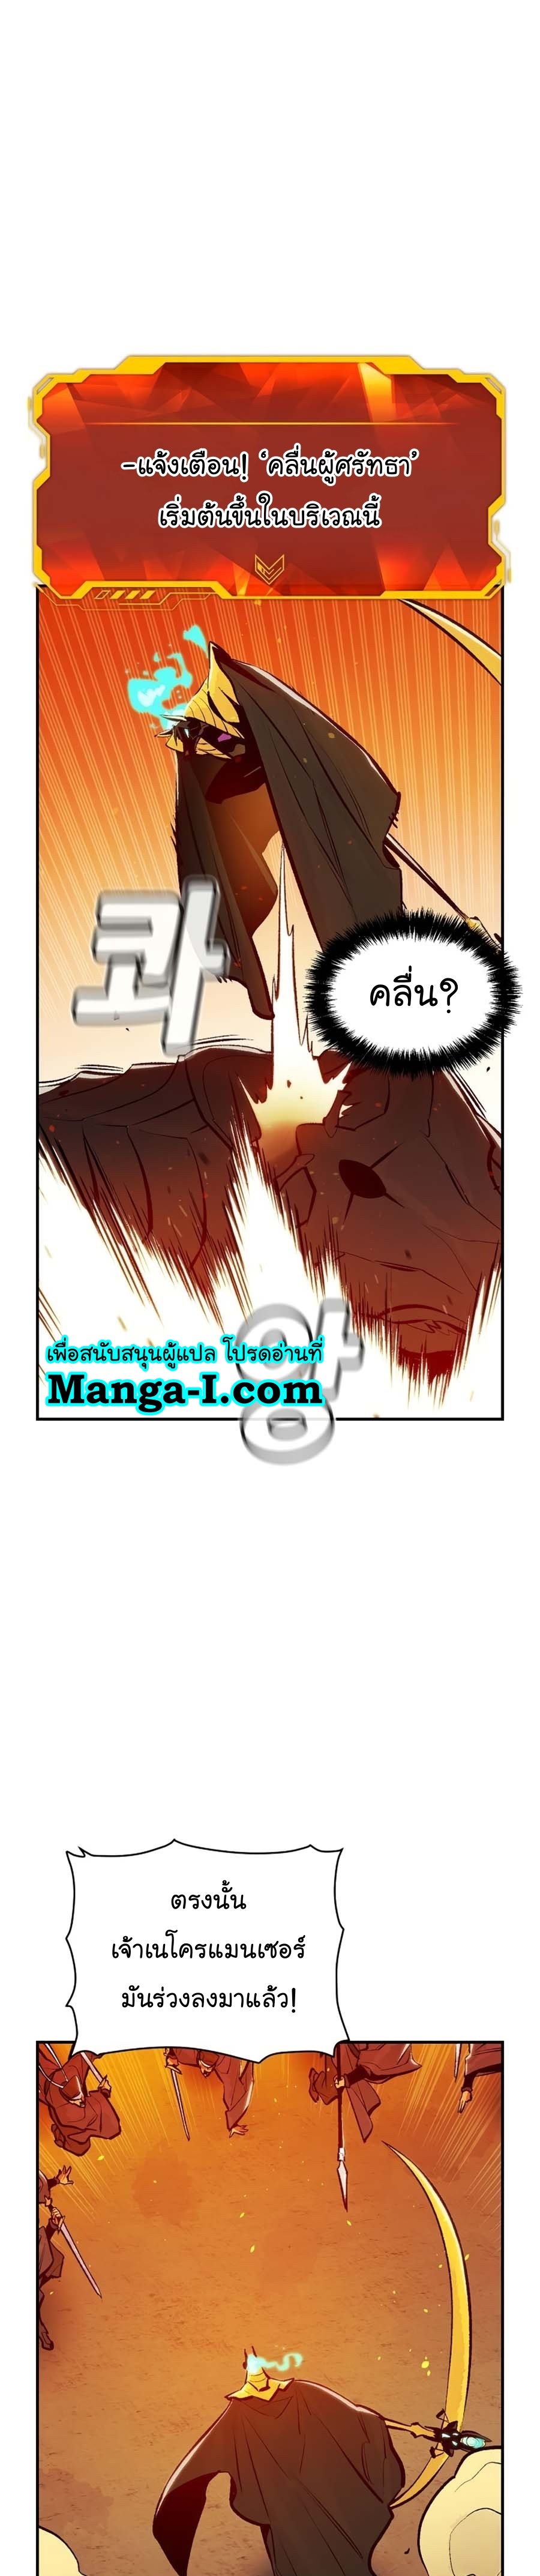 manga manwha The lone necromancer 106 (7)